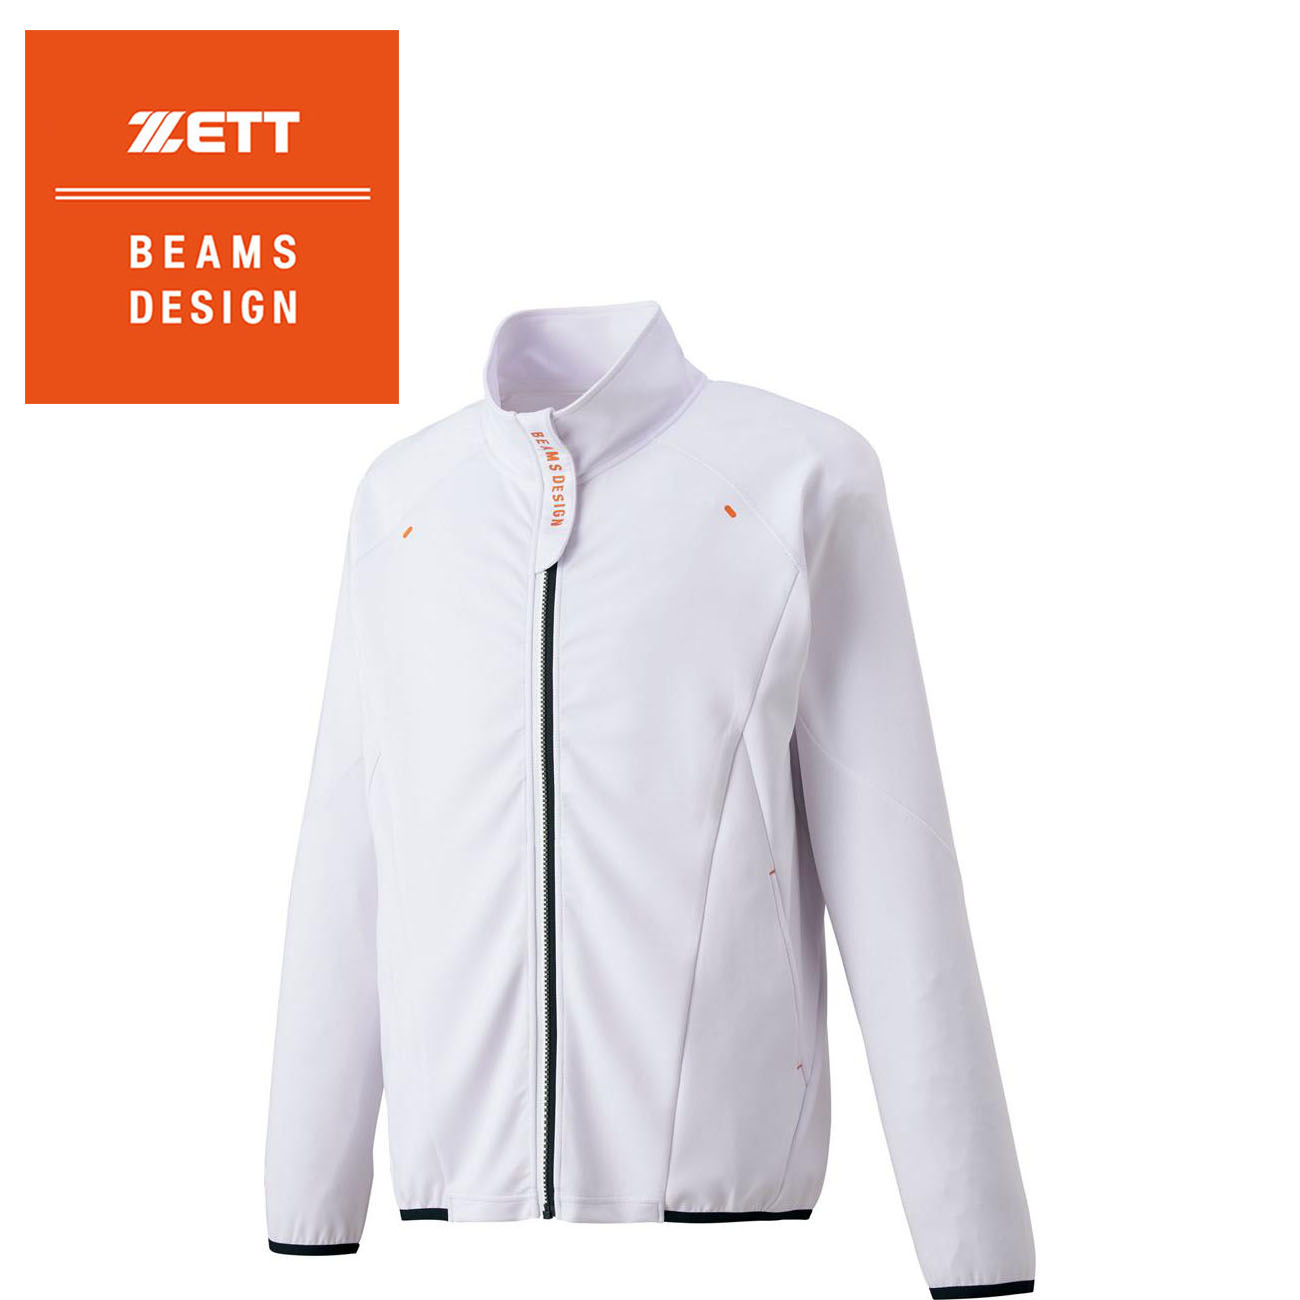 ZETT BEAMS DESIGN フルジップジャケット | 総合スポーツ企業グループ 